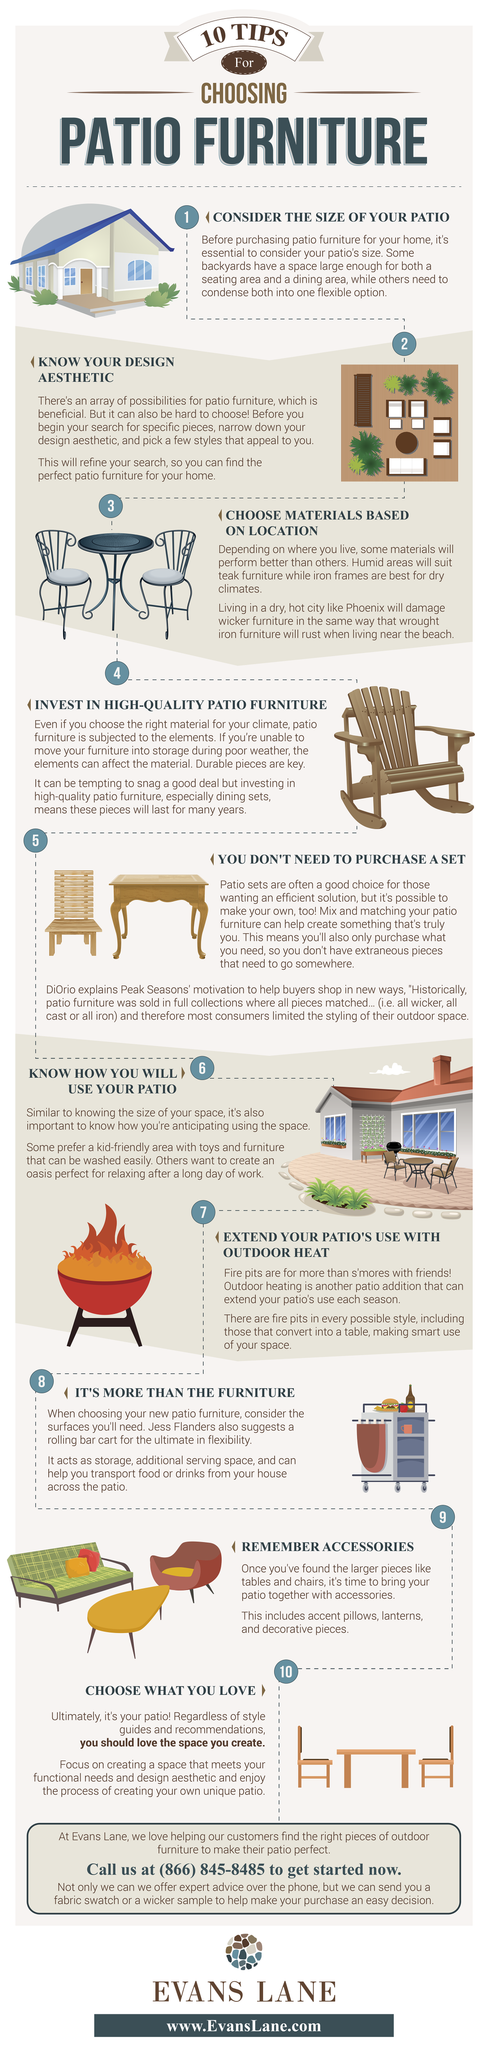 ten-tips-choosing-patio-furniture-infographic-evans-lane